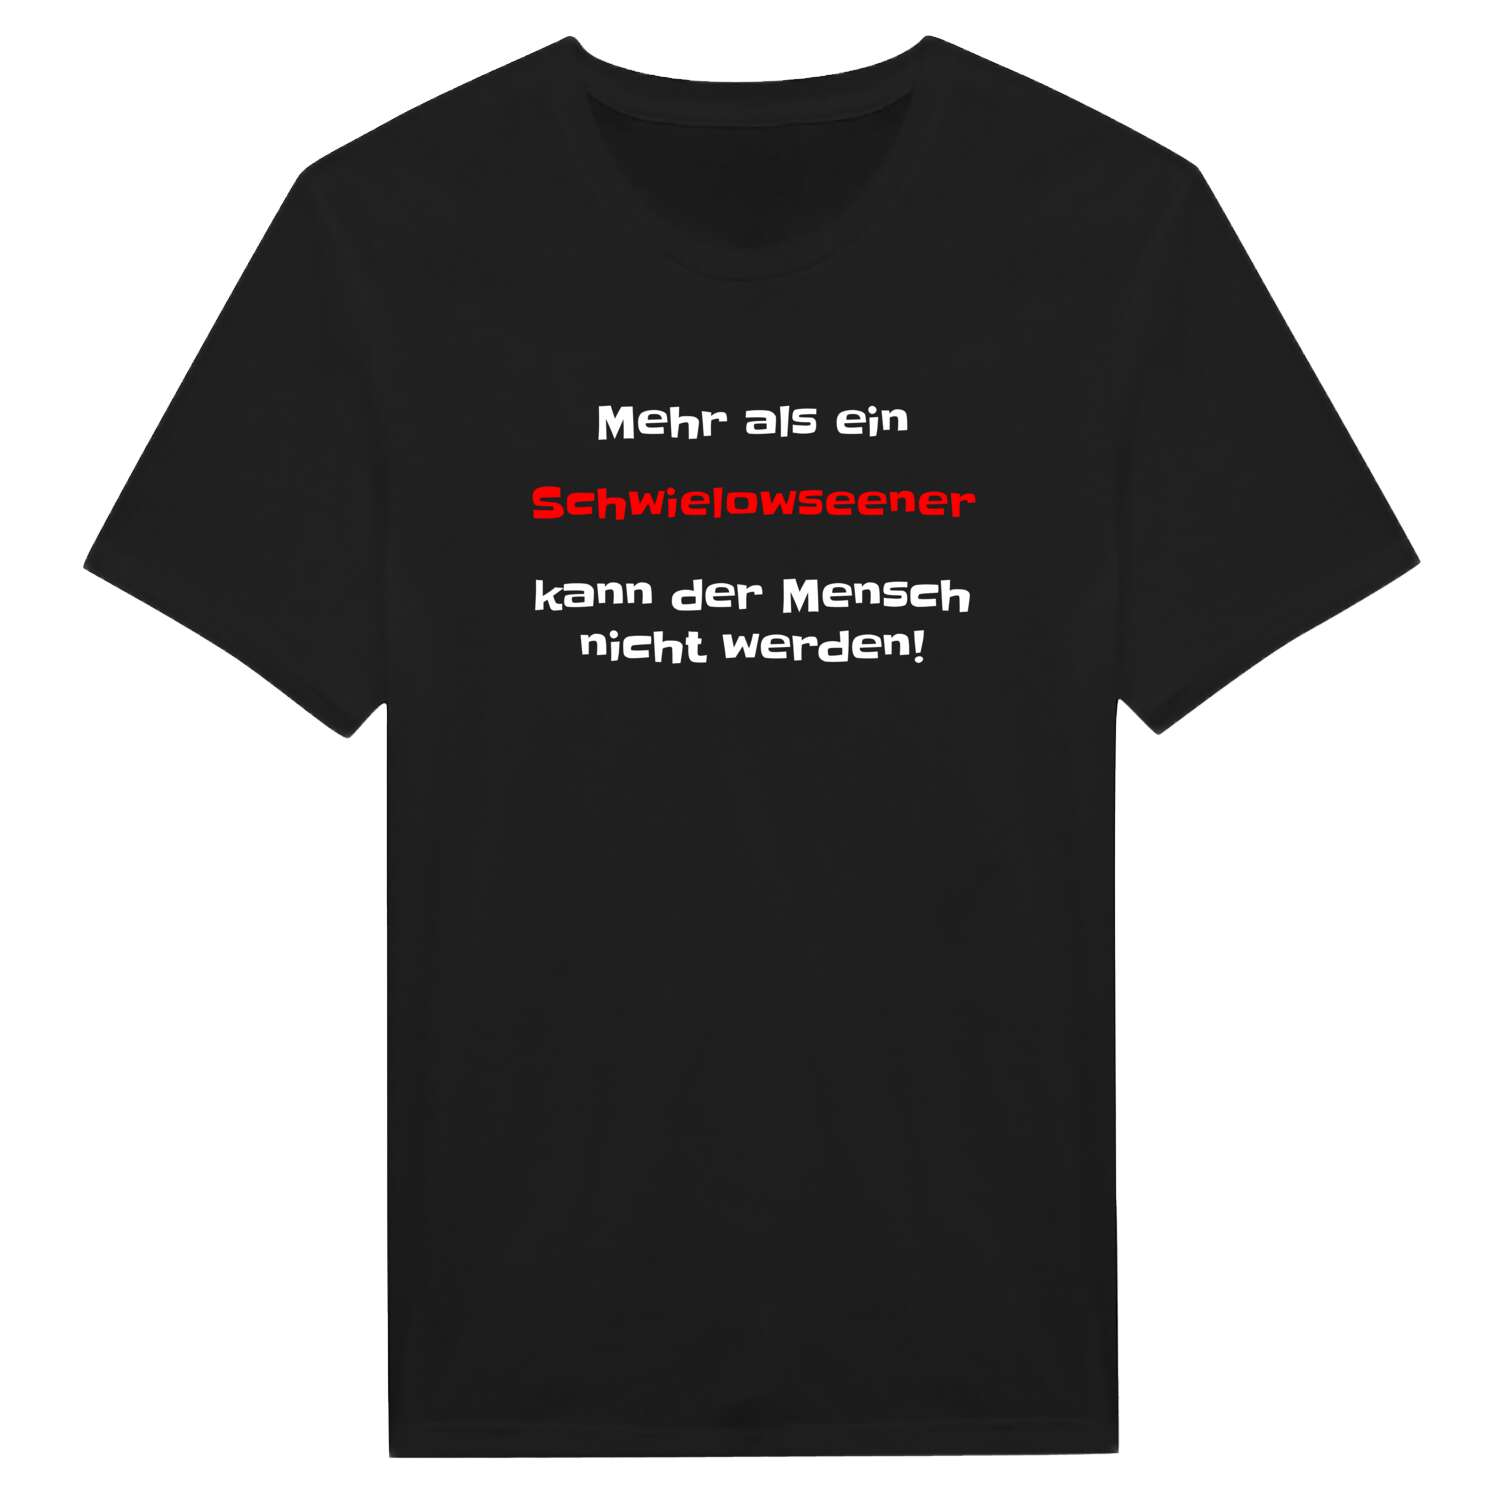 Schwielowsee T-Shirt »Mehr als ein«